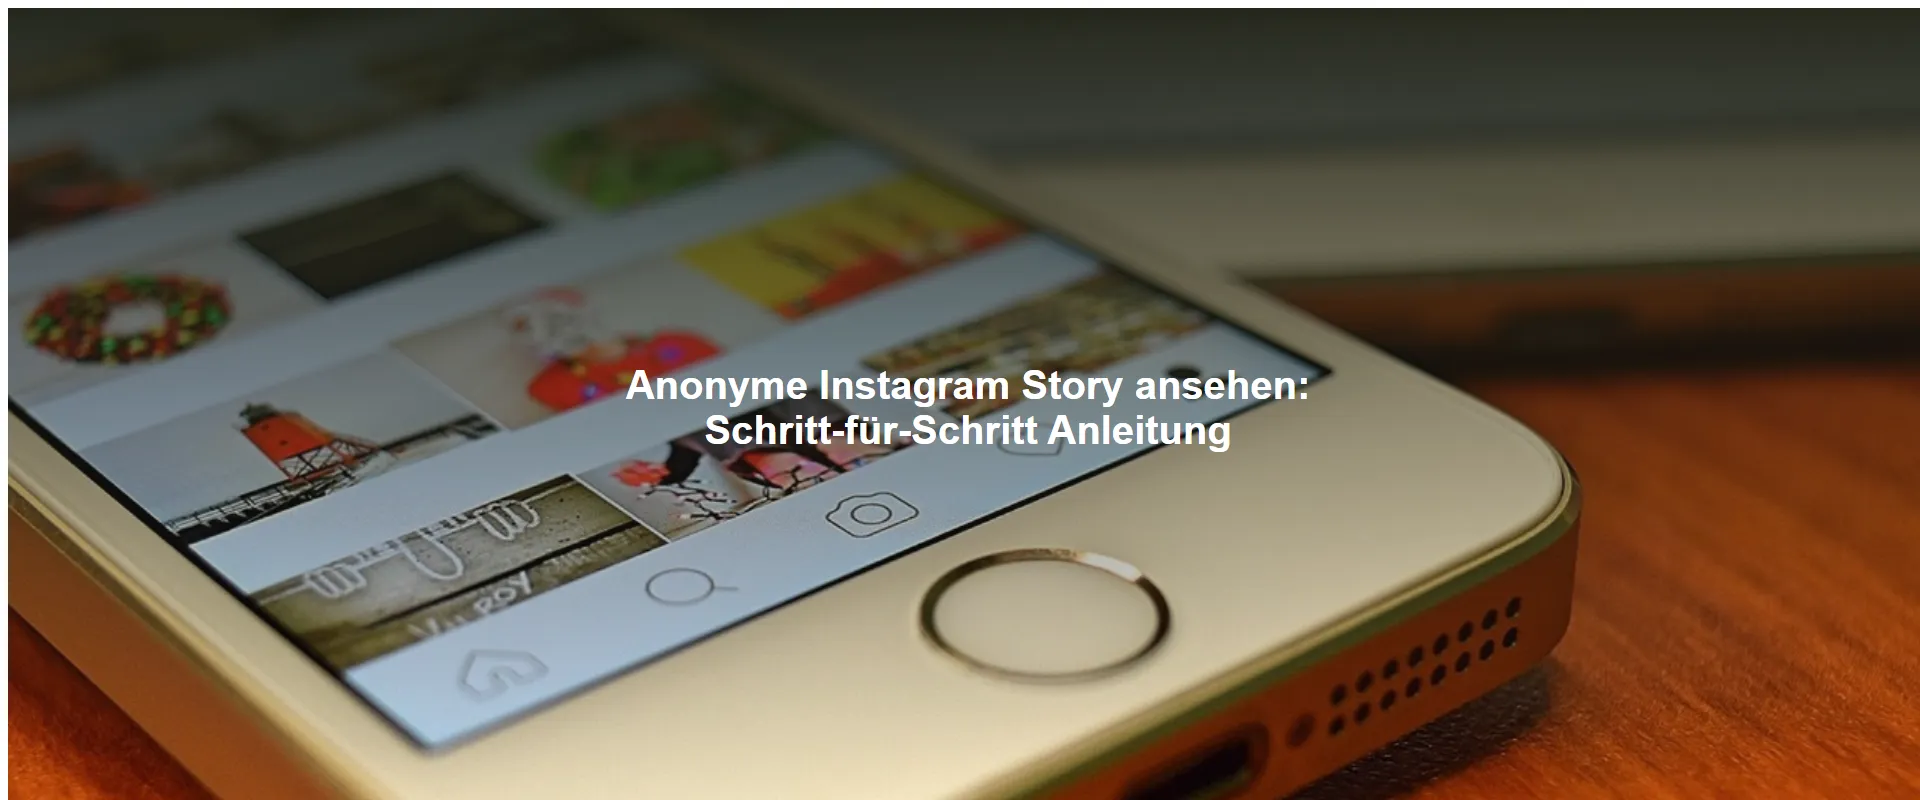 Anonyme Instagram Story ansehen: Schritt-für-Schritt Anleitung